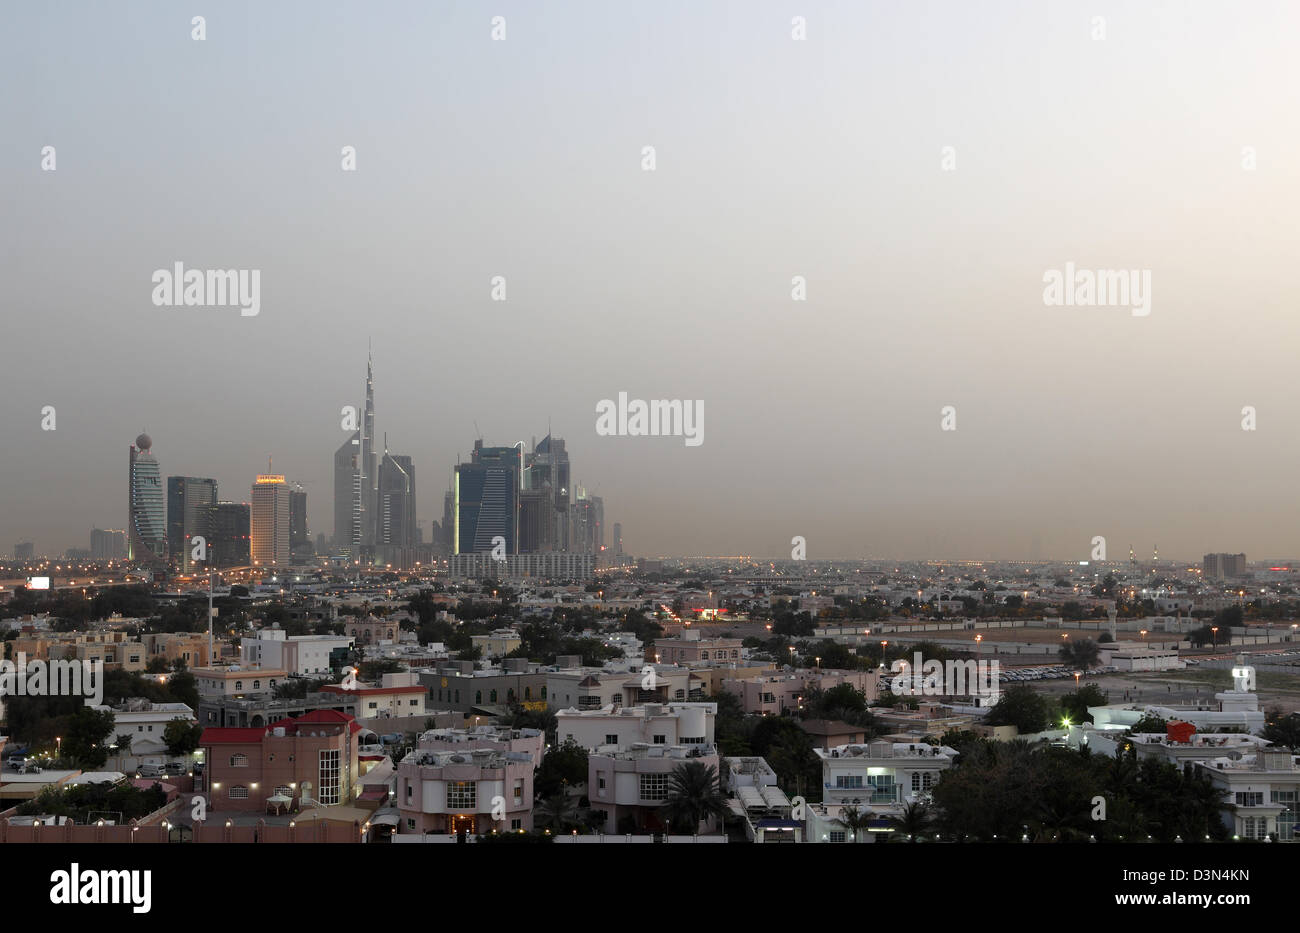 Dubai, United Arab Emirates, Urban Landscape at dusk Stock Photo